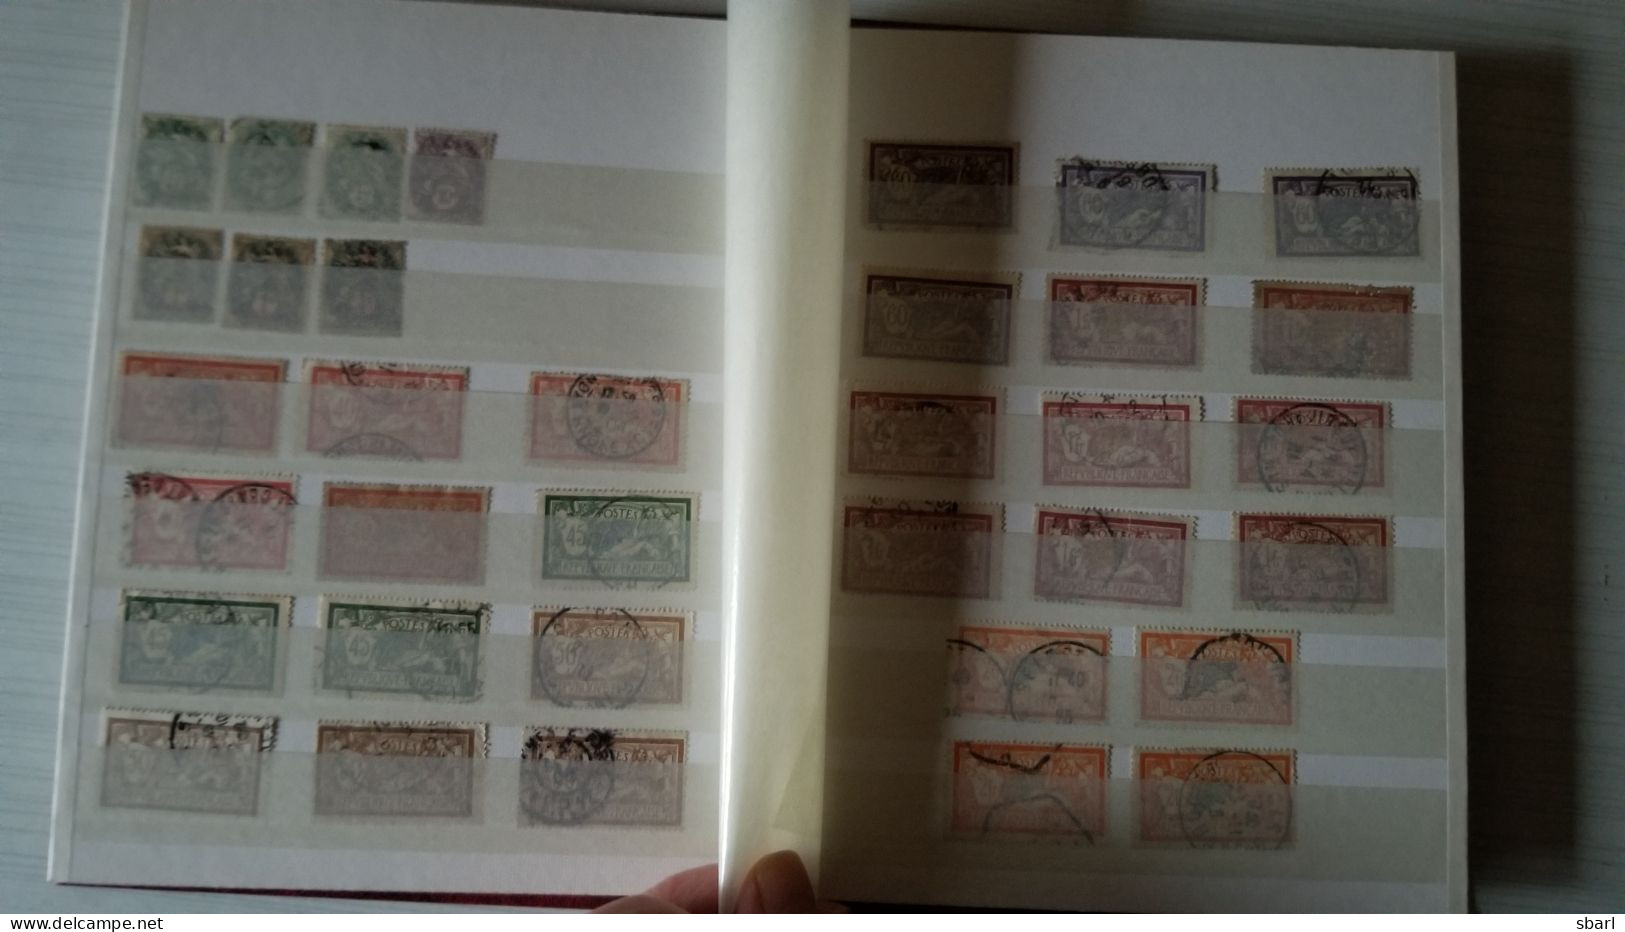 Collection ENORME de 14 Albums : France anciens, neufs** et oblitérés + tous pays des milliers de timbres